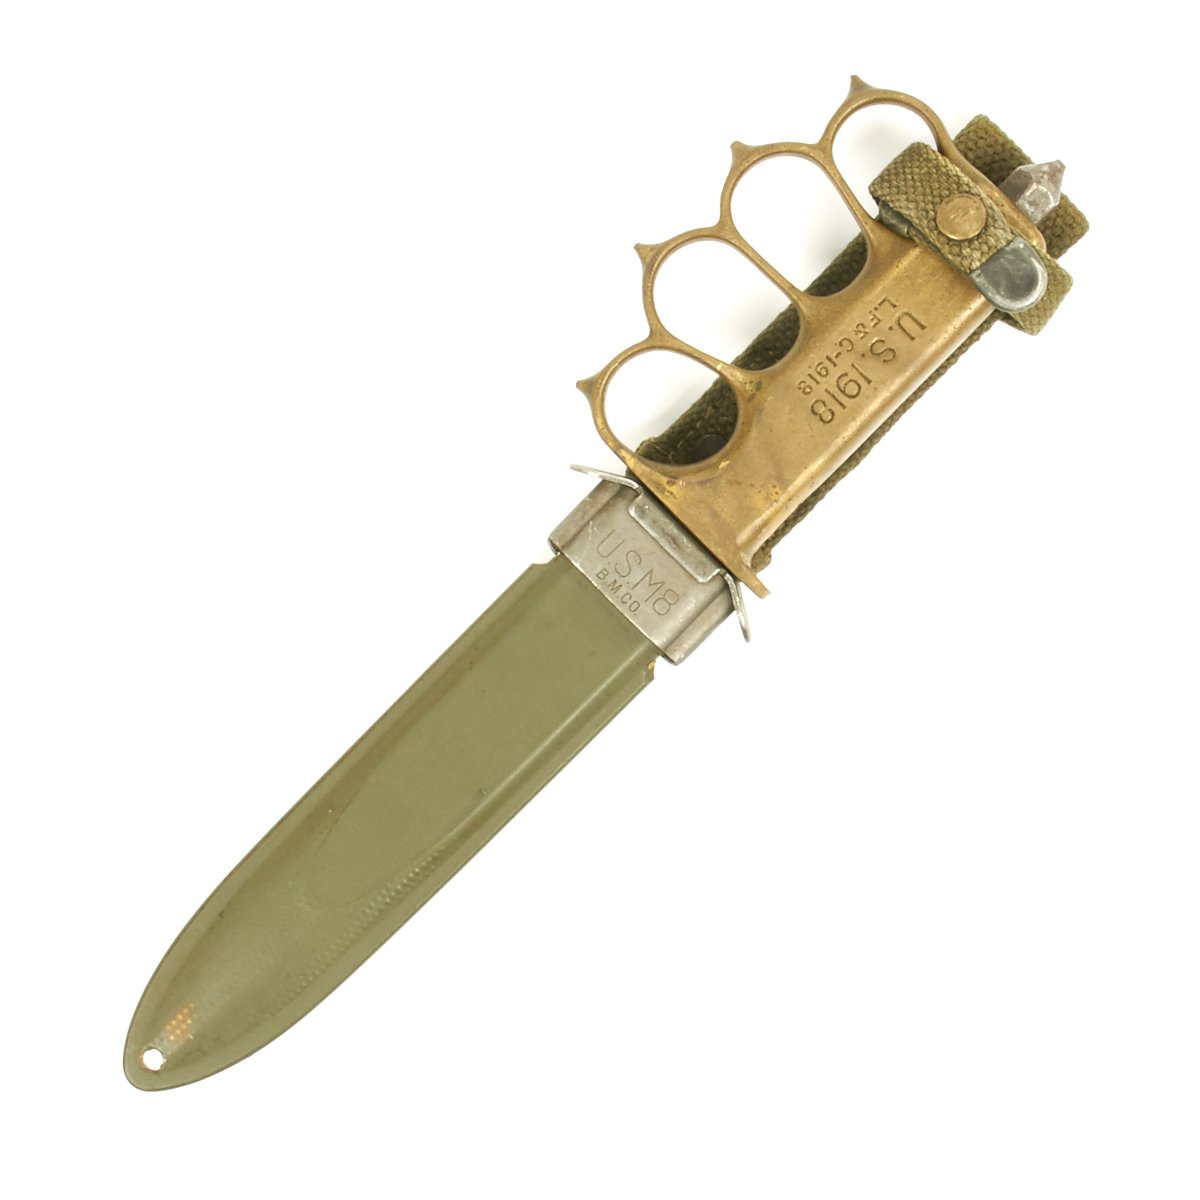 U.S. 1918 Brass Knuckle Bolo Trench Knife